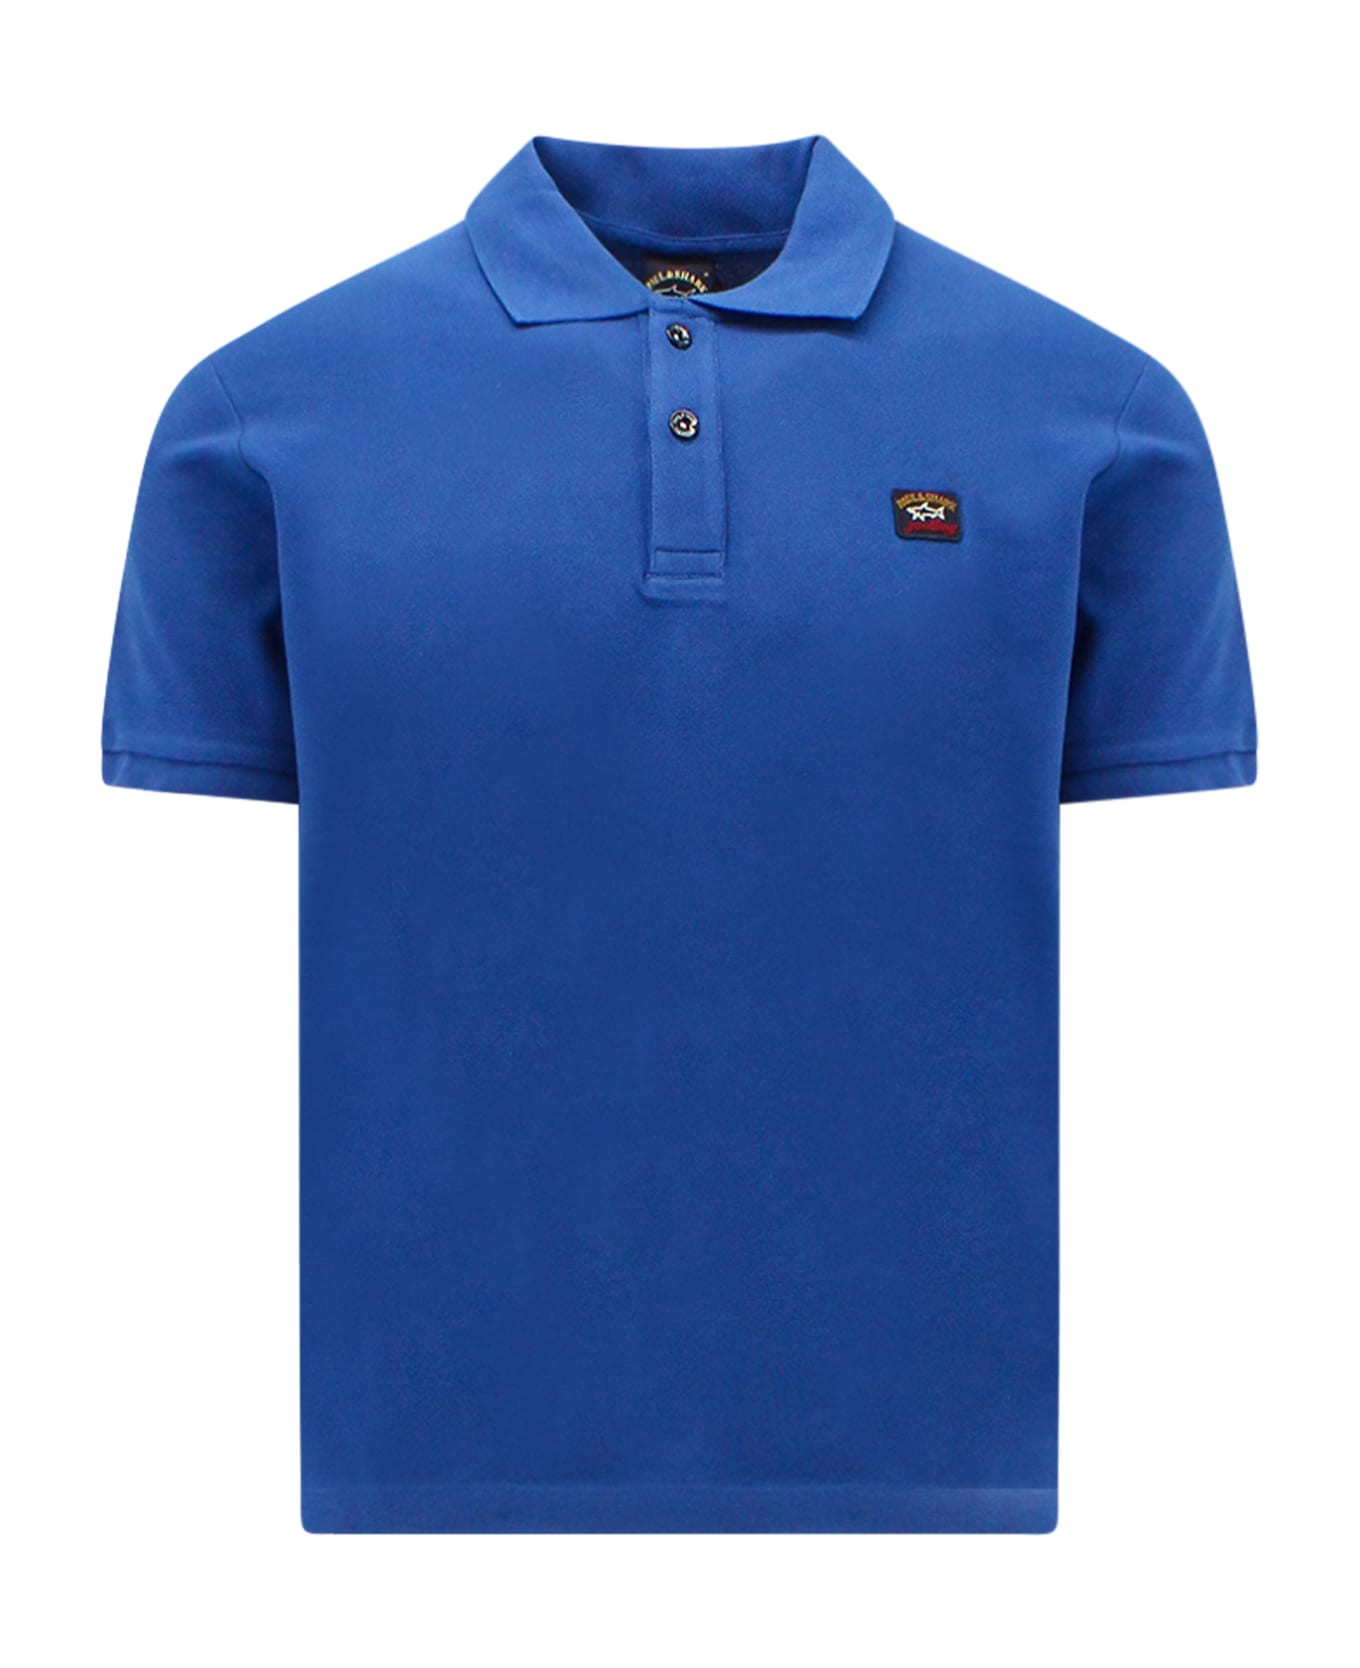 Paul&Shark Polo Shirt - Blue